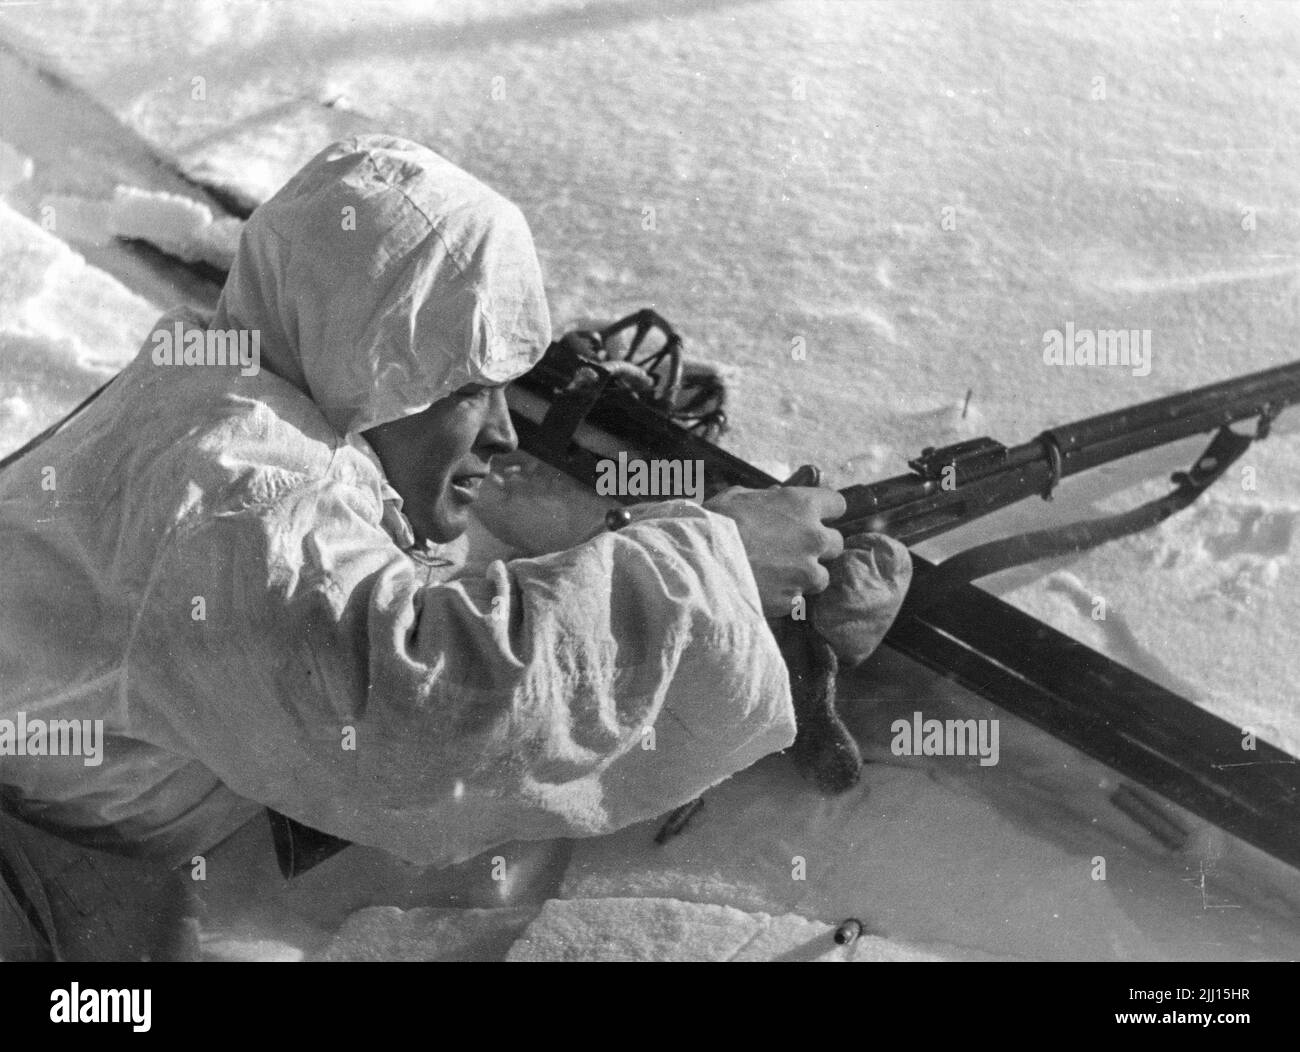 Finsk infanterist laddar geväret på Nordfronten januari 1940 under vinterkriget. Sovjets anfall mot Finland inleddes 30 november 1939 och fredsavtal s Stock Photo